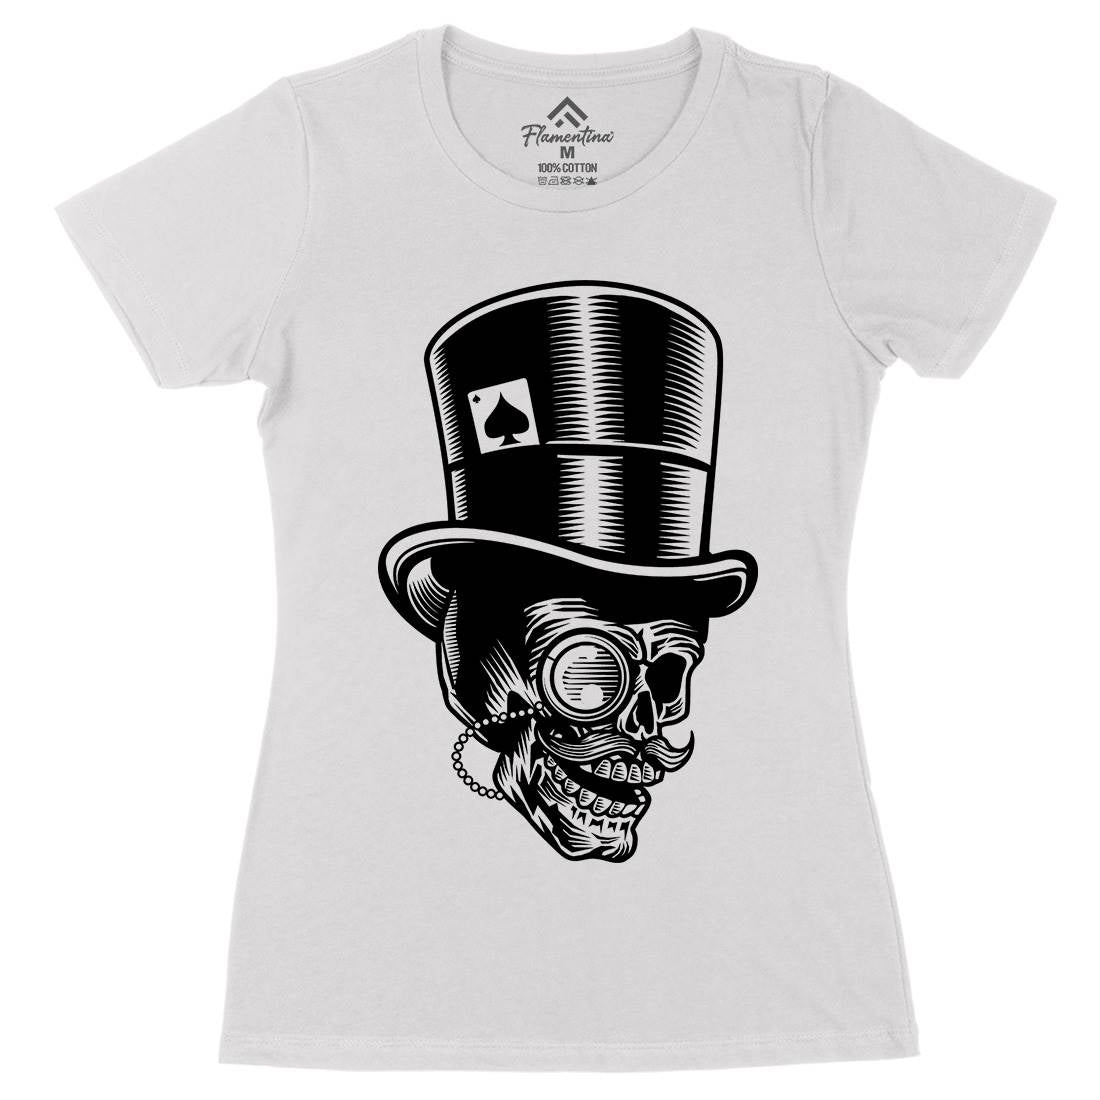 Classic Gentleman Skull Womens Organic Crew Neck T-Shirt Horror B513